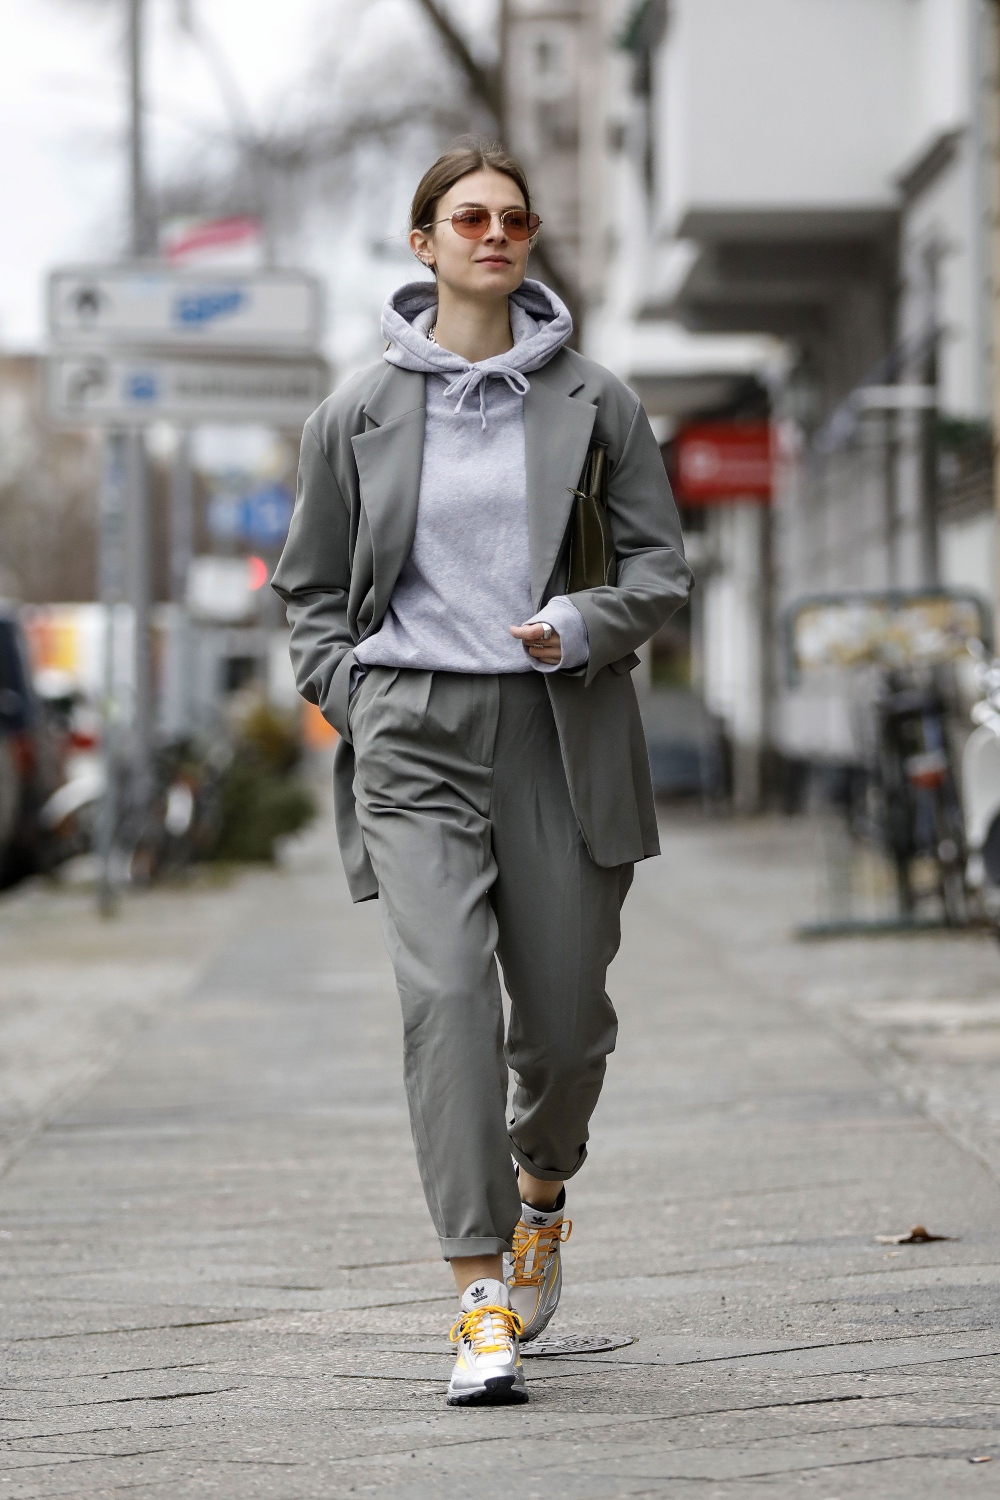 mujer en la calle con saco y pantalon grises